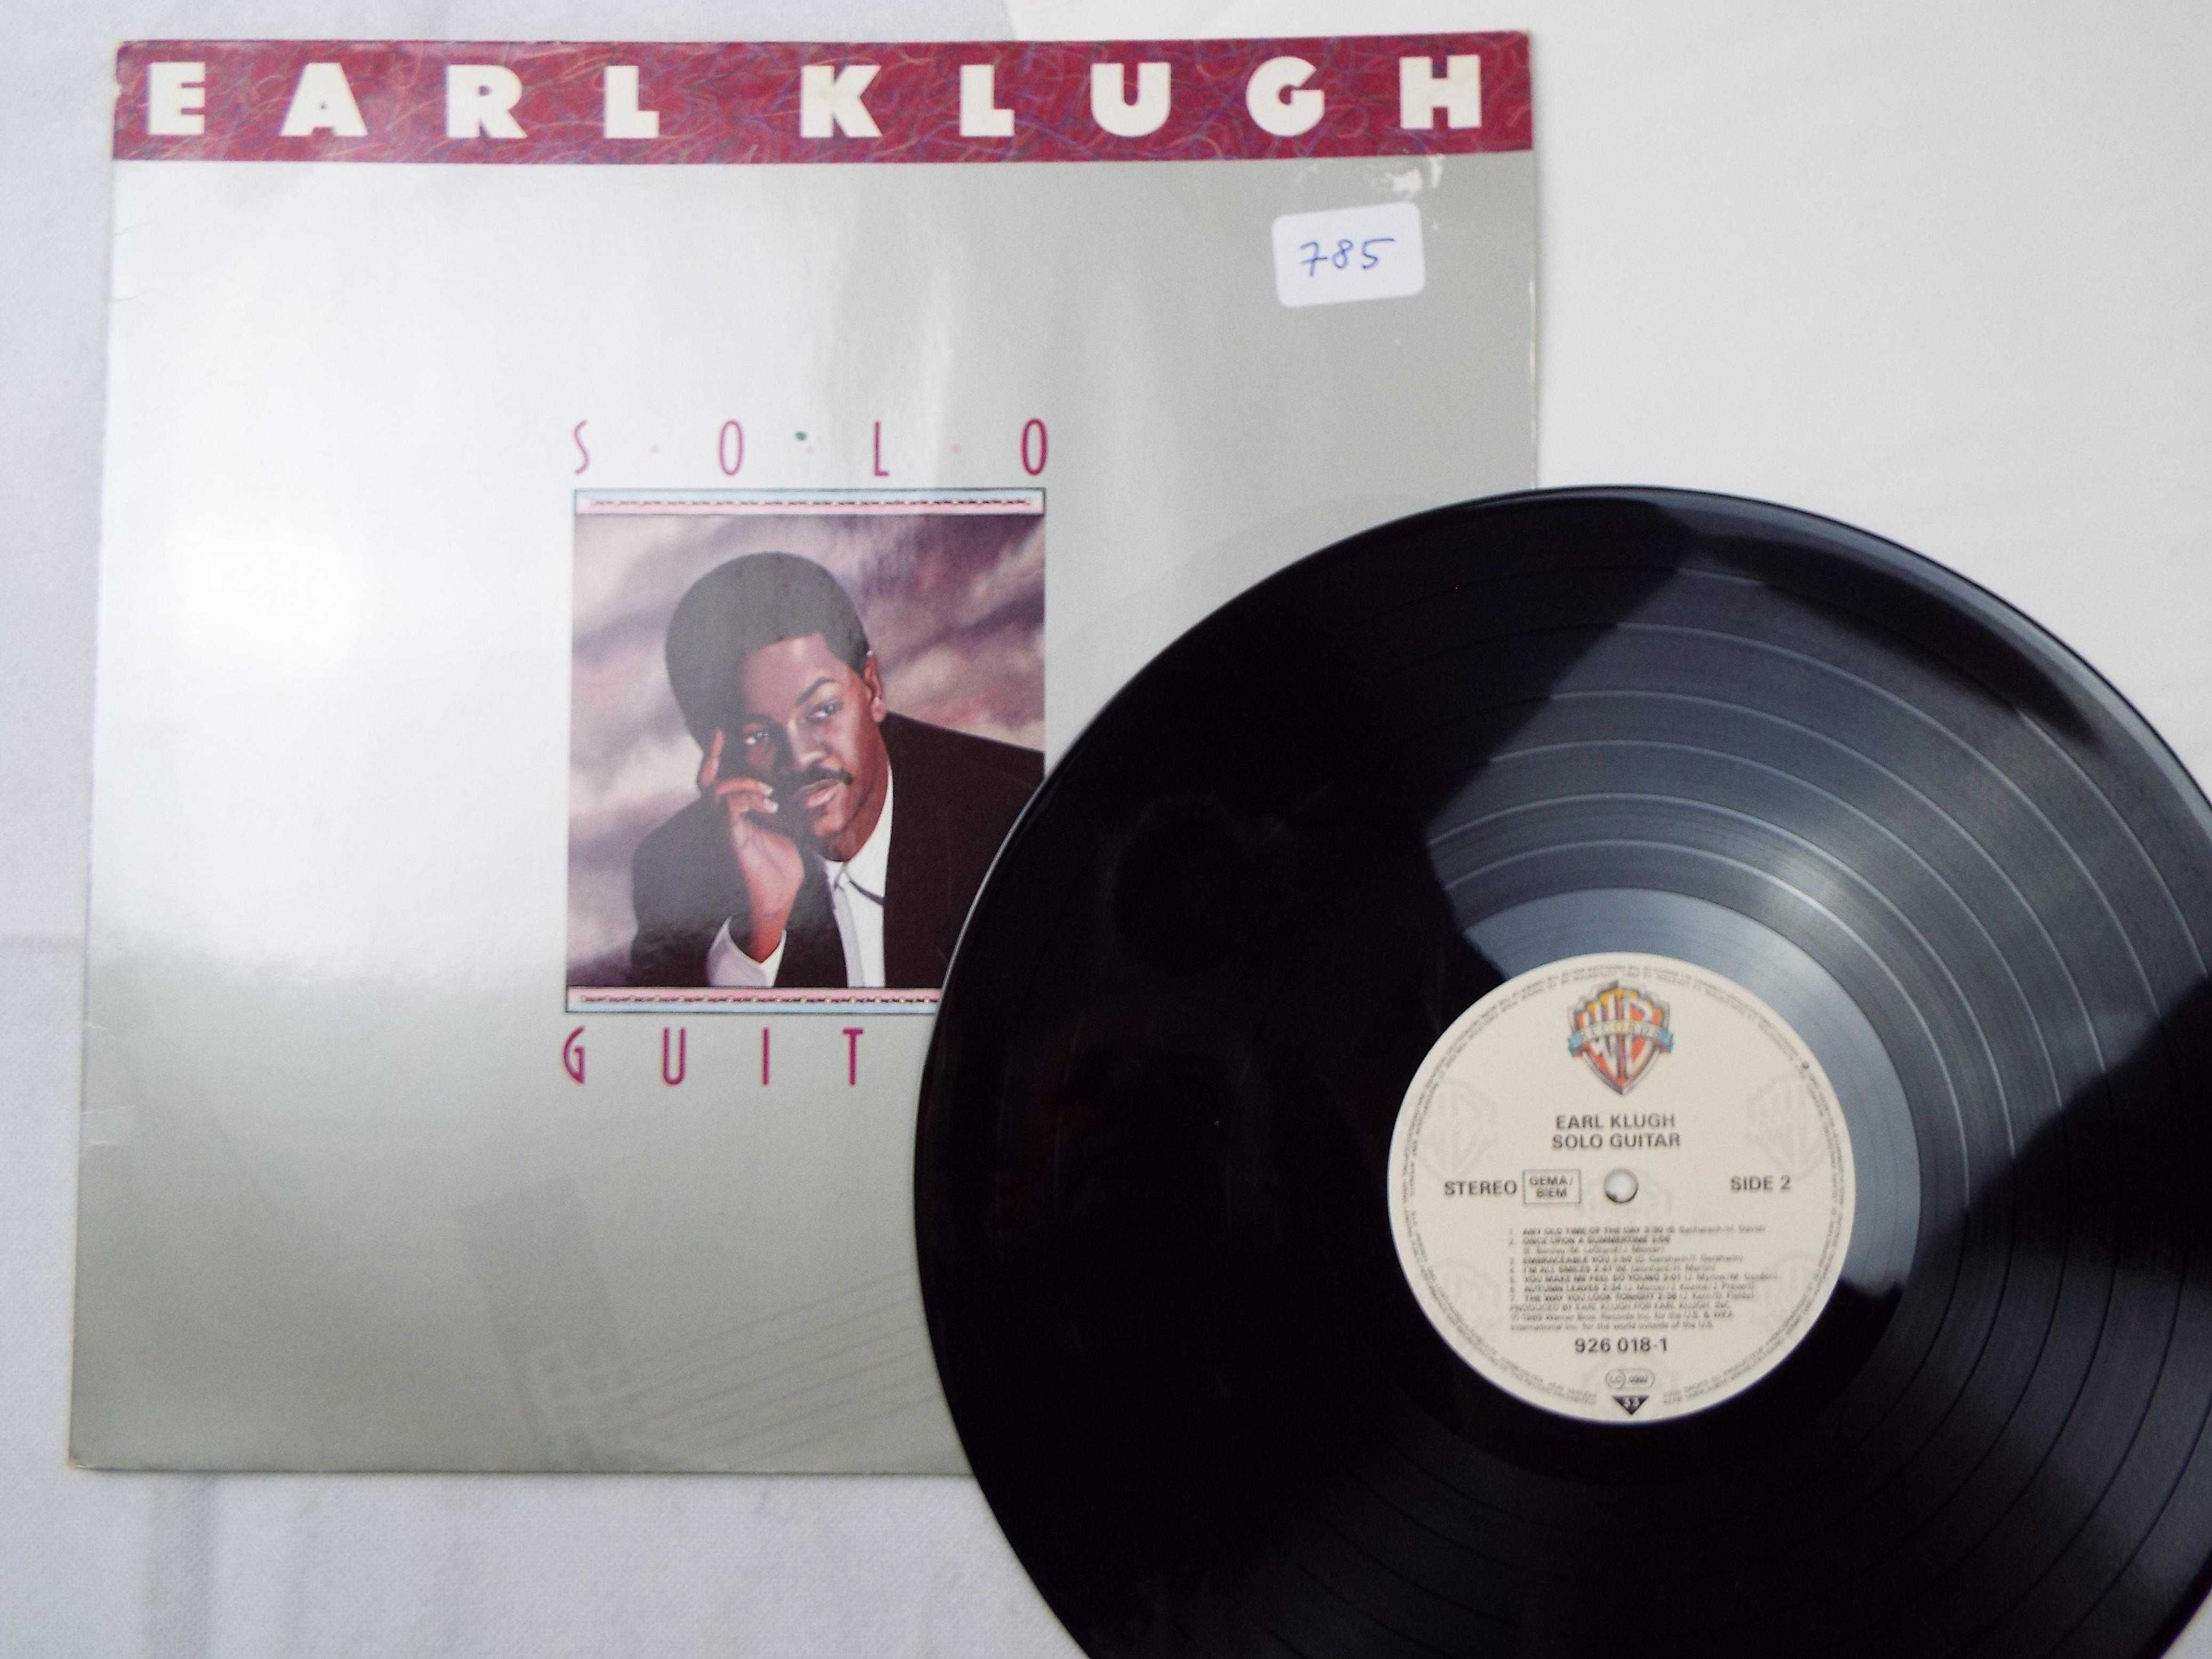 Płyta winylowa Earl Klugh  solo Guitar